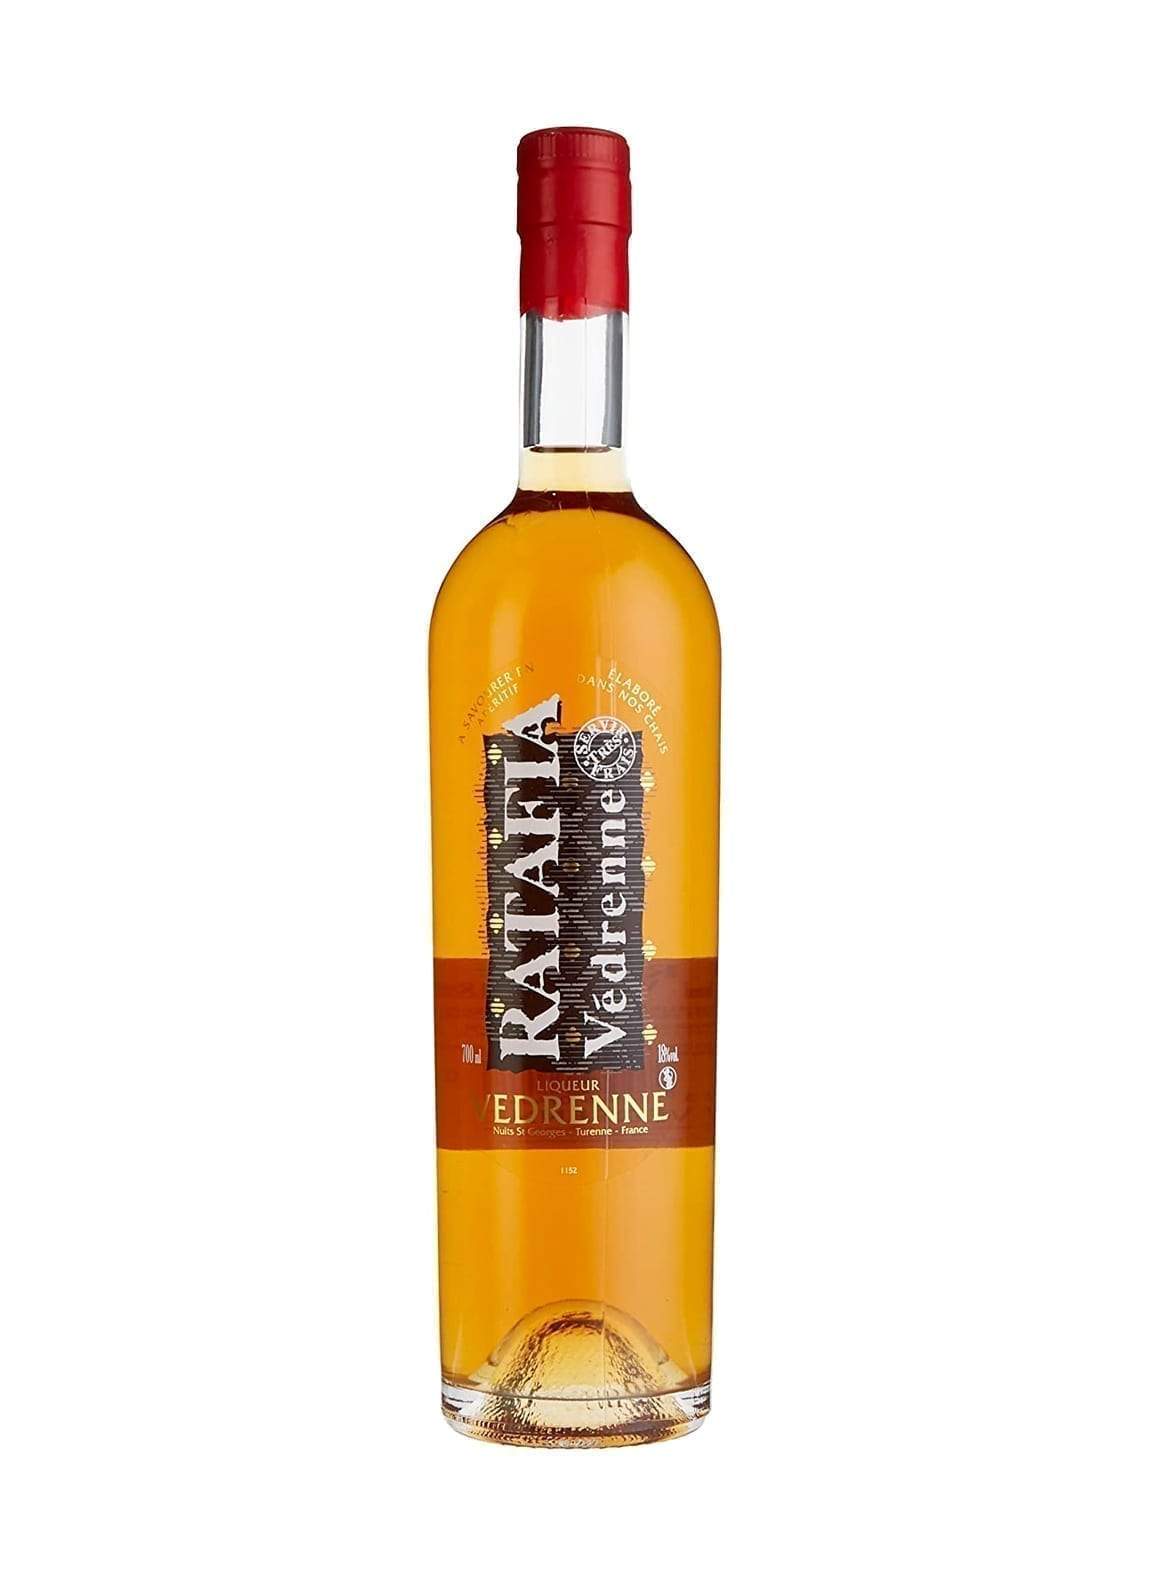 Vedrenne Ratafia de Bourgogne 18.5% 700ml | Liquor & Spirits | Shop online at Spirits of France